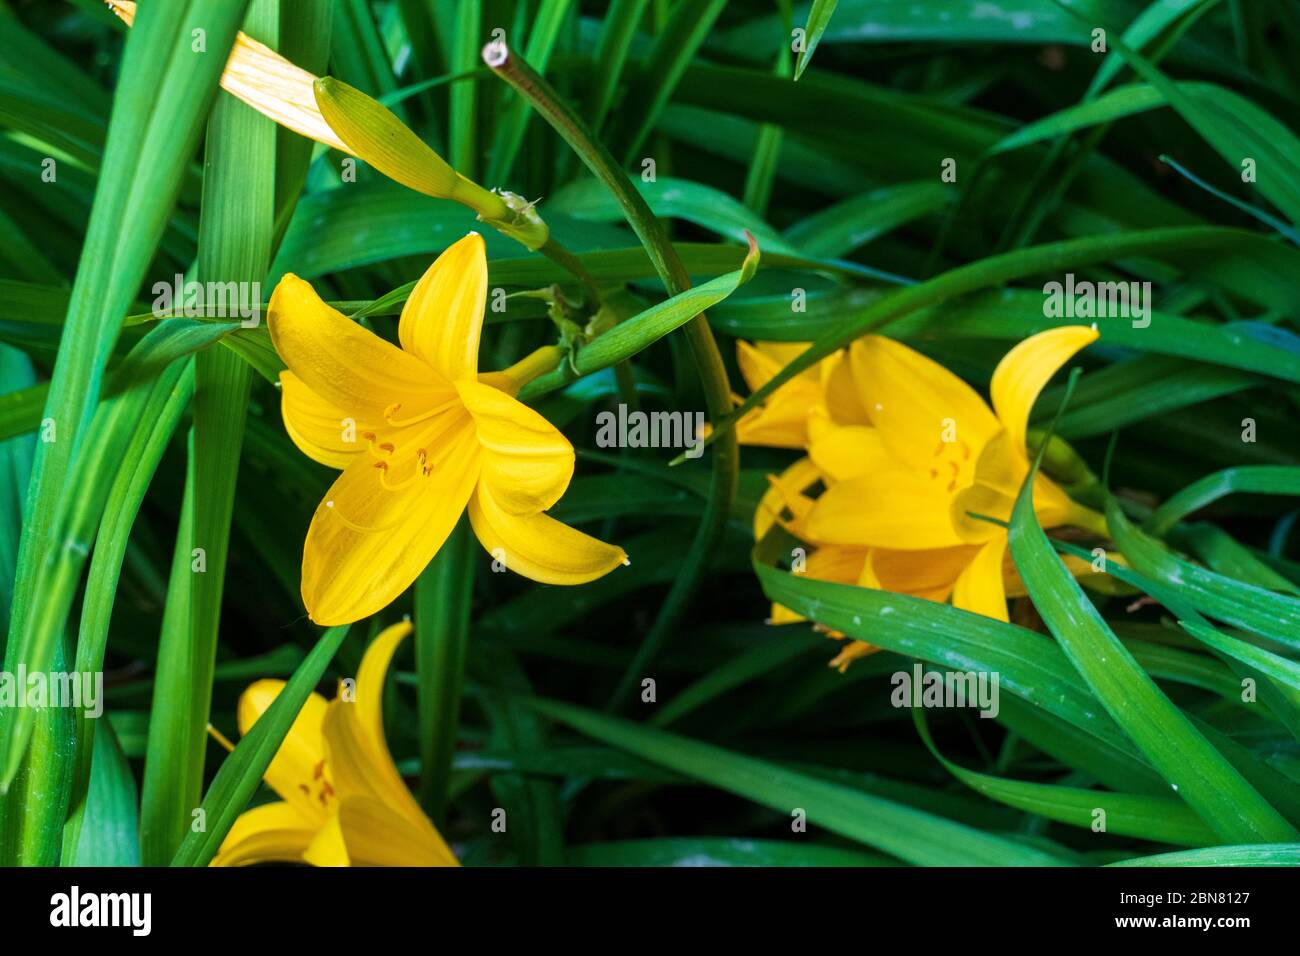 Asiatische gelbe Lilie mit Blatt Hintergrund Foto de stock